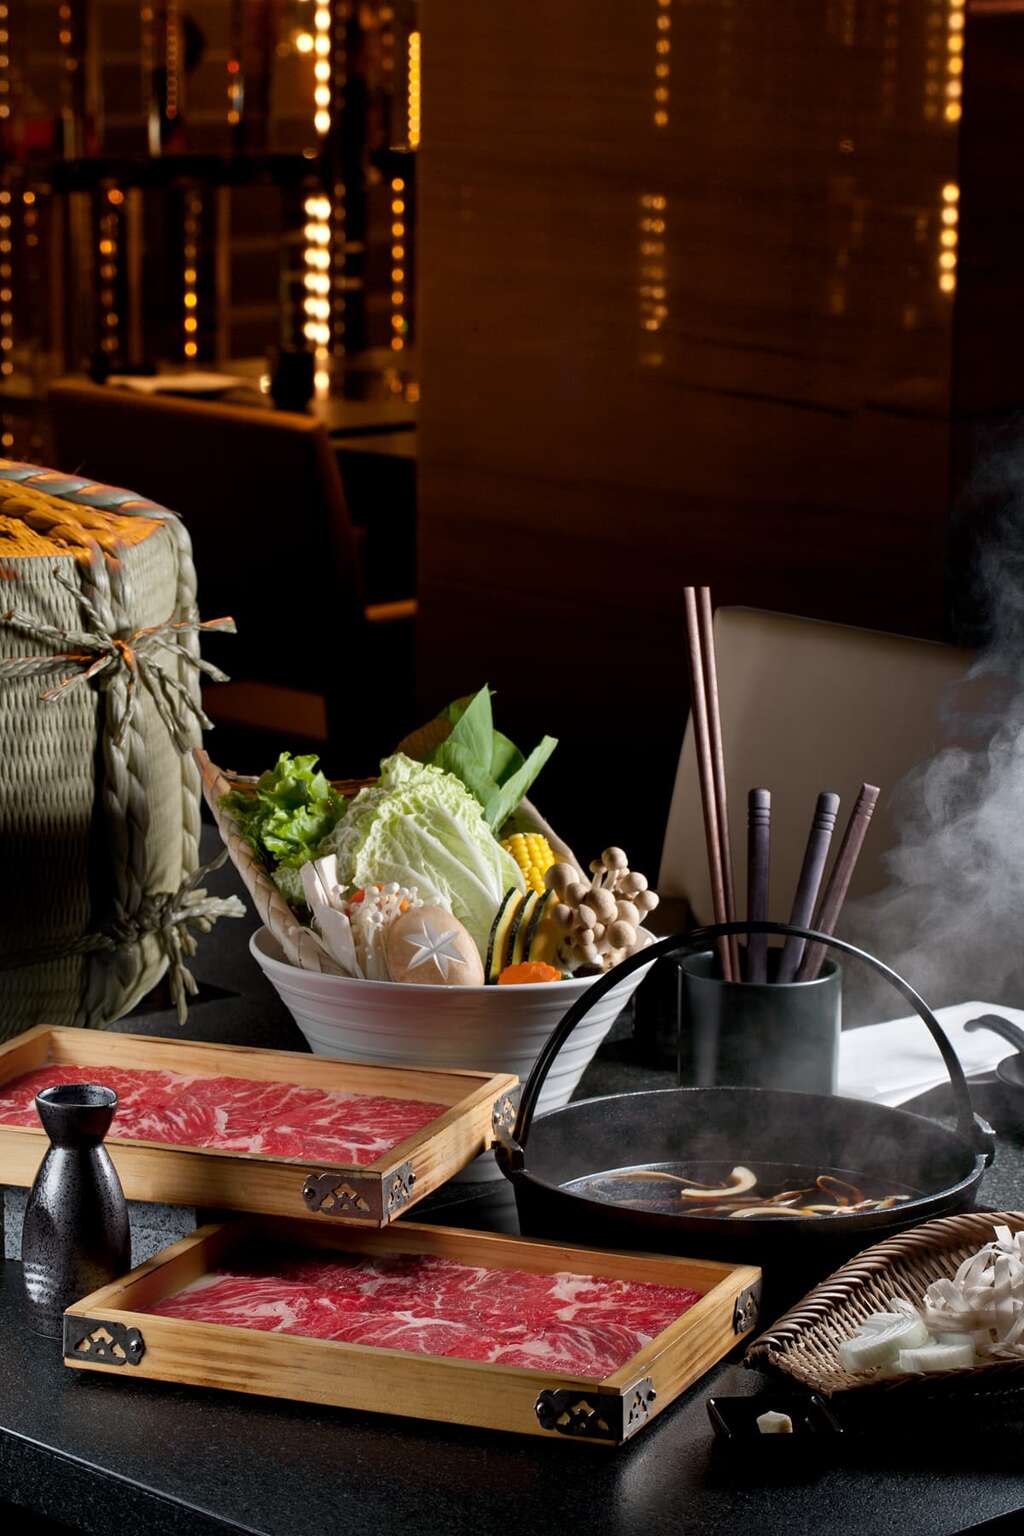 高雄翰品酒店日式料理餐廳的壽喜燒，不分春夏秋冬都受到民眾喜愛。 圖片_高雄翰品酒店提供